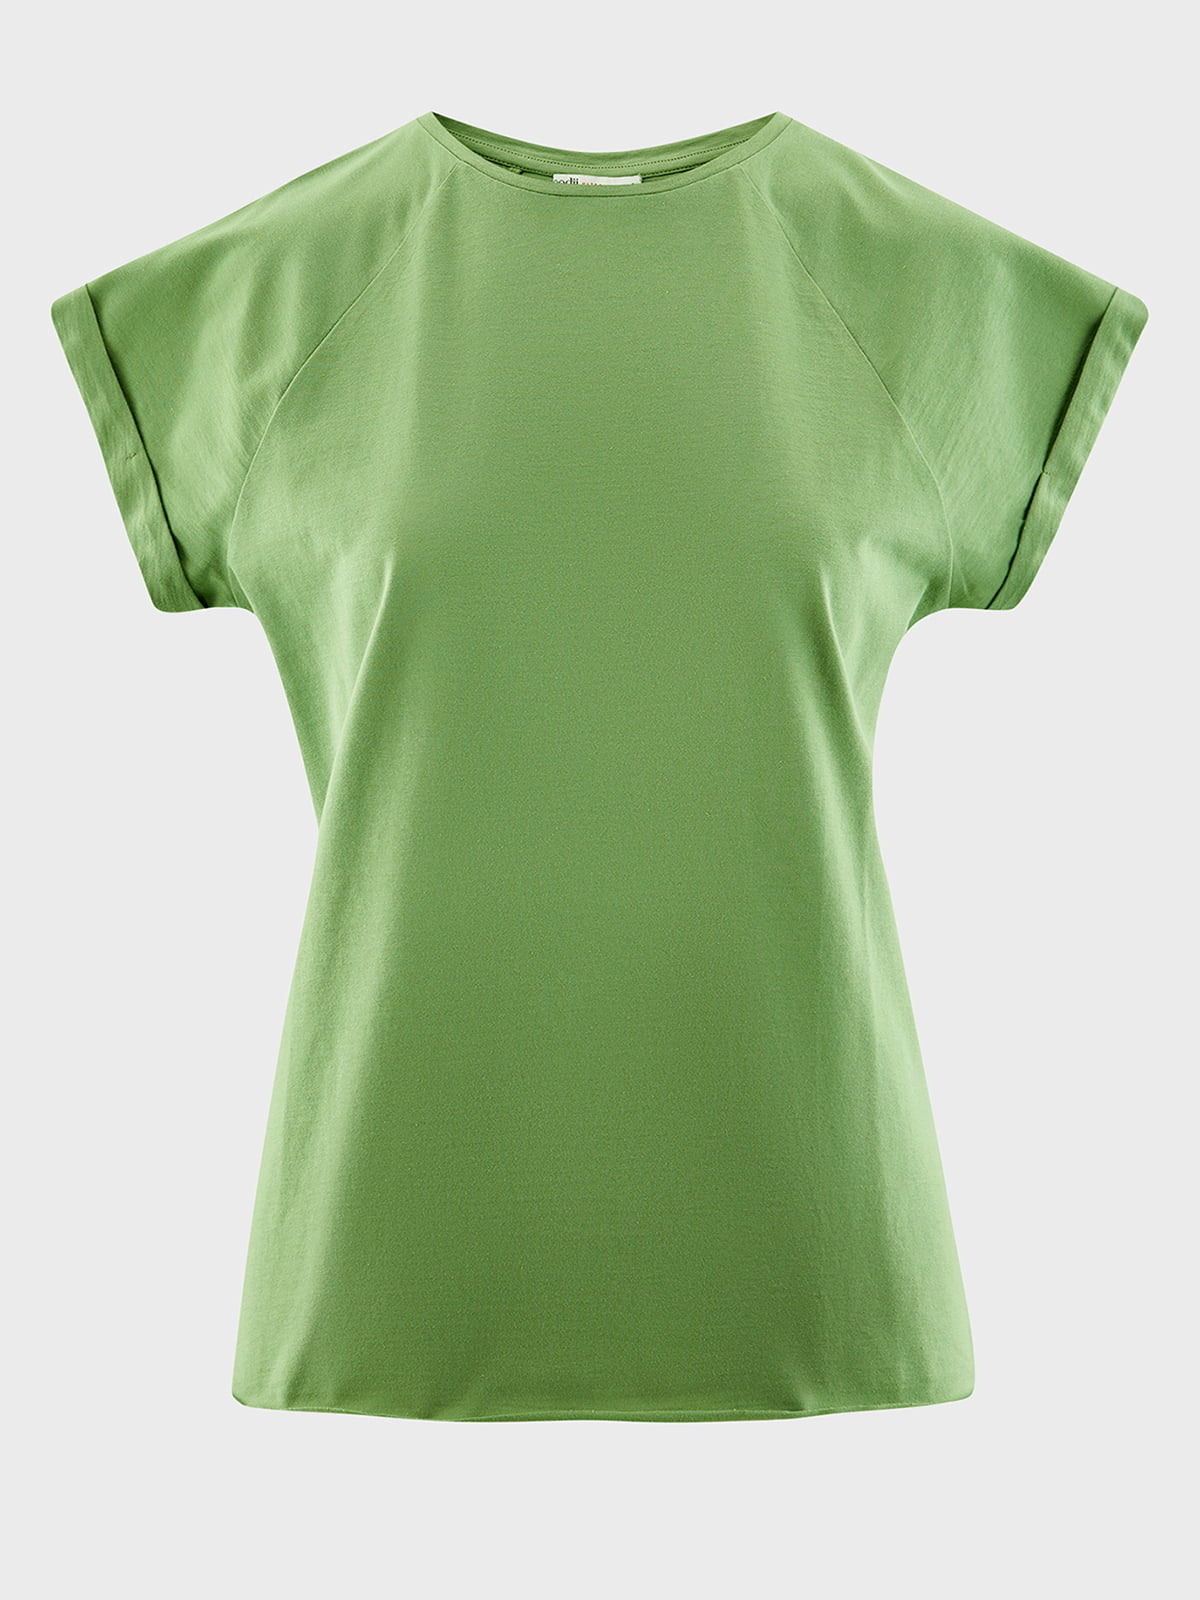 Купить базовые футболки хорошего качества. Зелёная футболка женская. Футболка зеленого цвета женская. Футболка женская Базовая зеленая. Зеленая майка.